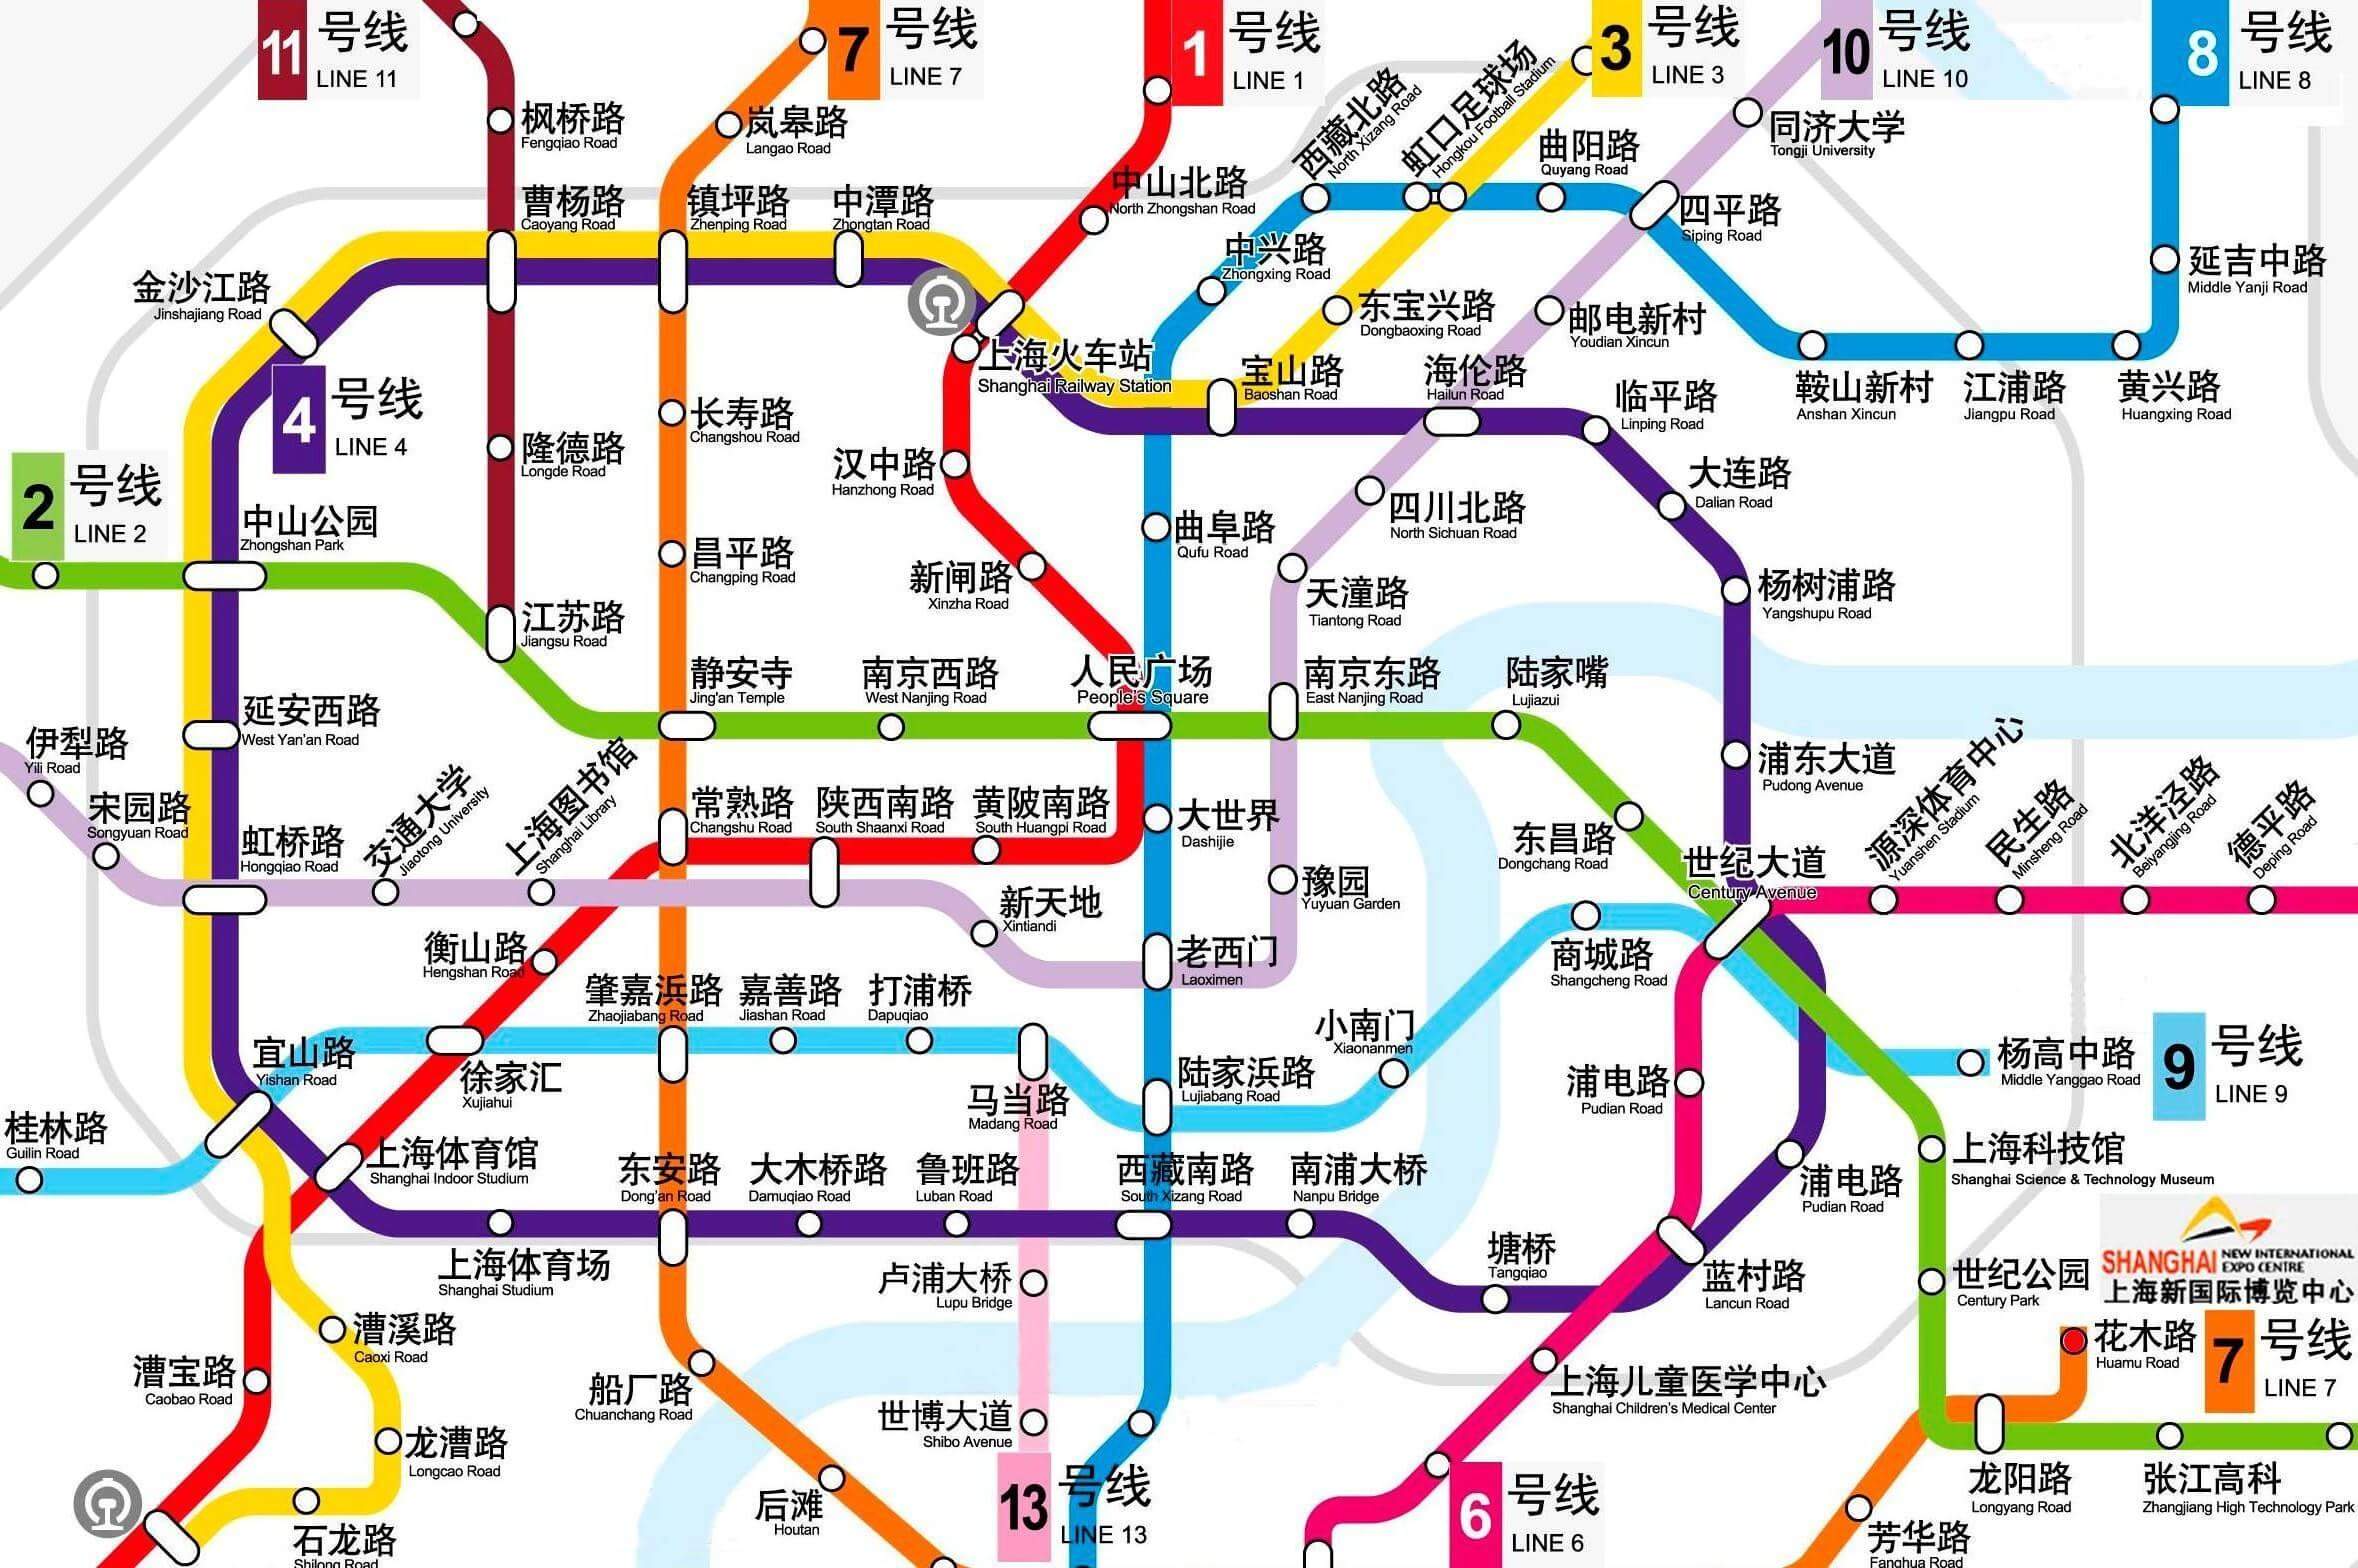 其第一条线路上海地铁1号线于1993年5月28日正式运营,使上海成为中国